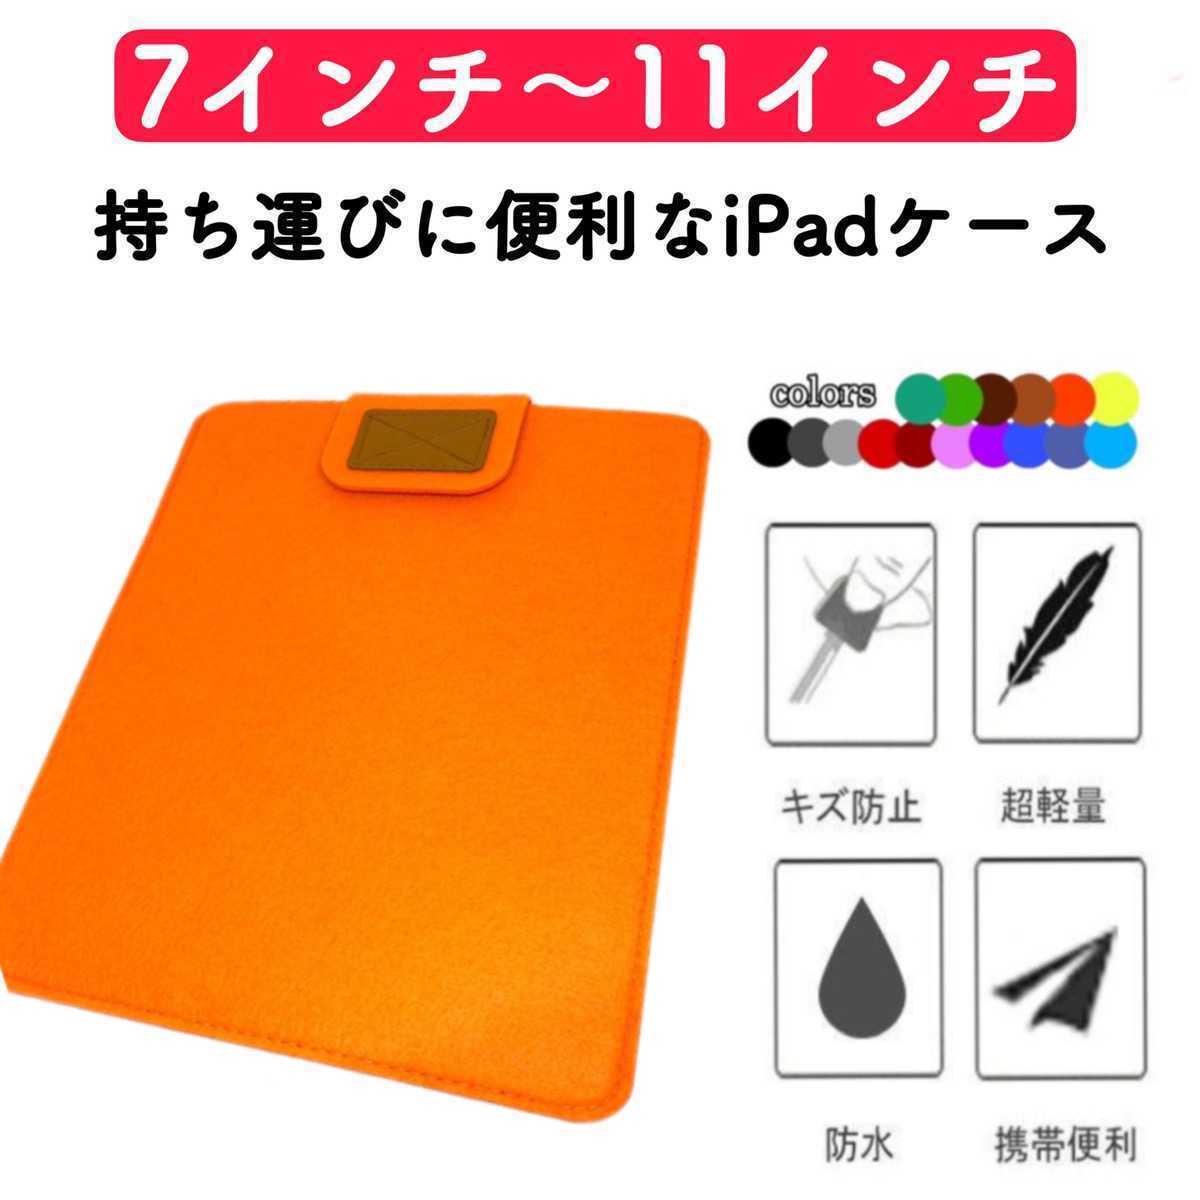 タブレットケース iPadケース コンパクト 薄型 フェルト カバー オレンジ 激安 7インチ 8インチ 9インチ 10インチ 11インチ 保護ケース_画像1